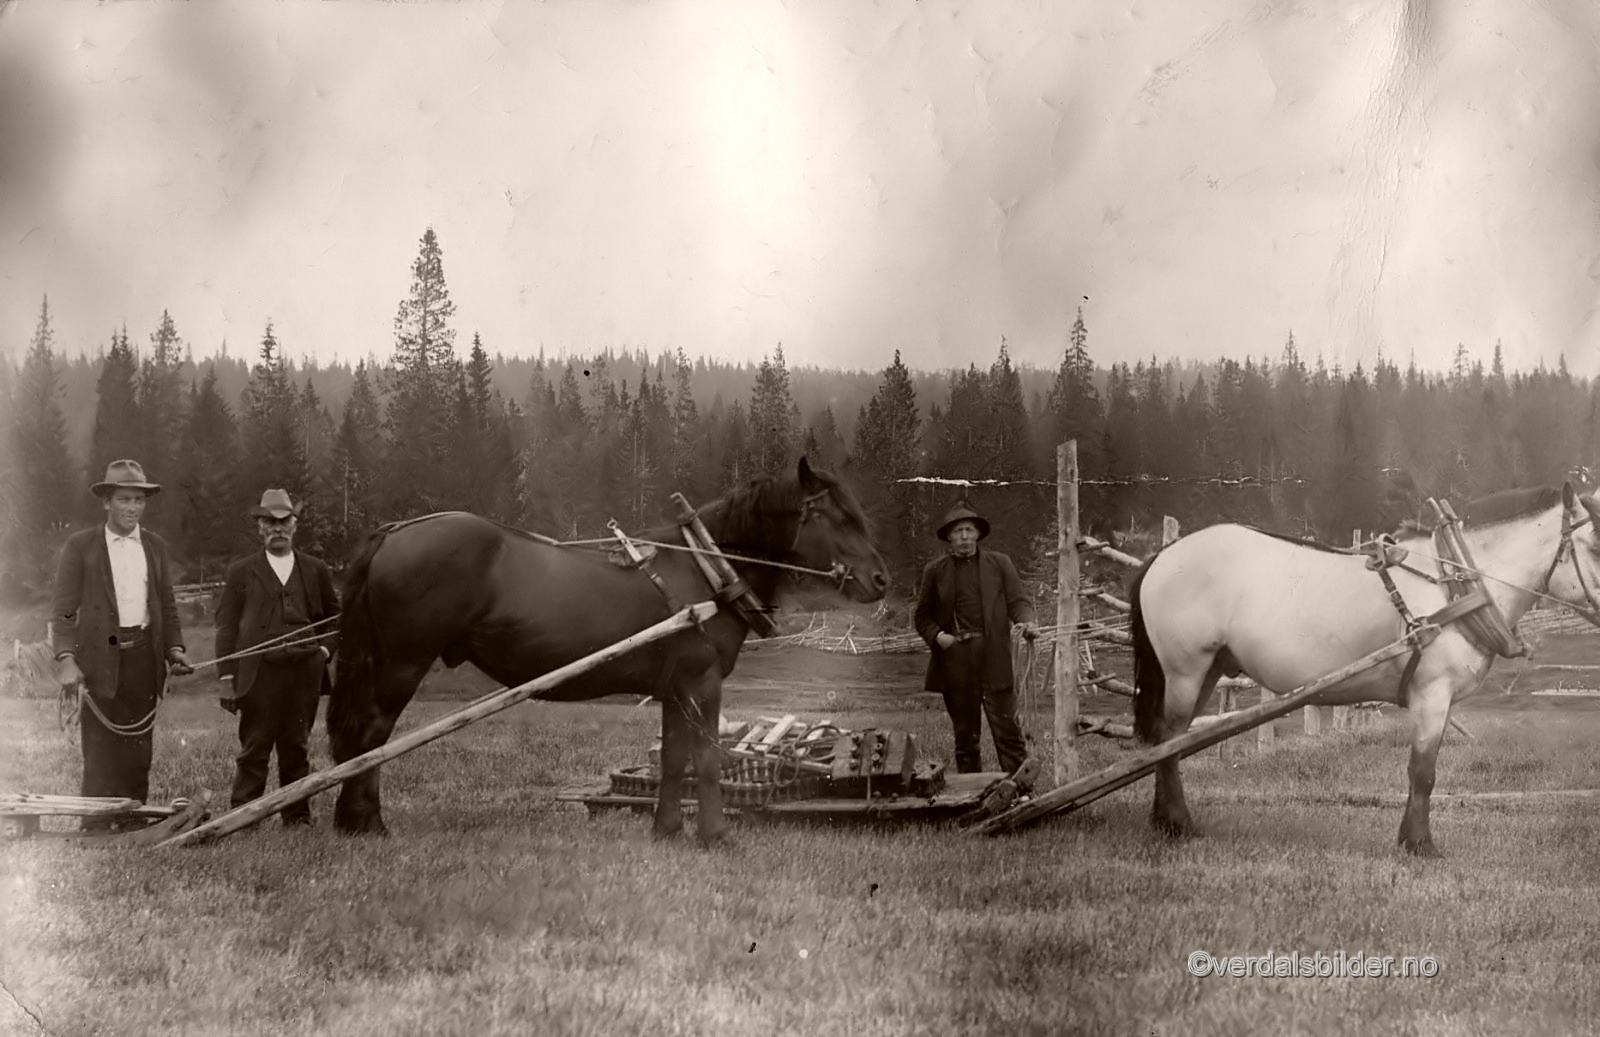 Banen fraktet tømmer mellom Esingen og Veressjøen i perioden 1914-18. Bildet er tatt ved Sørmoen. Utlånt av Svein Berg. Navna hentet fra Helgådalens bildearkiv.